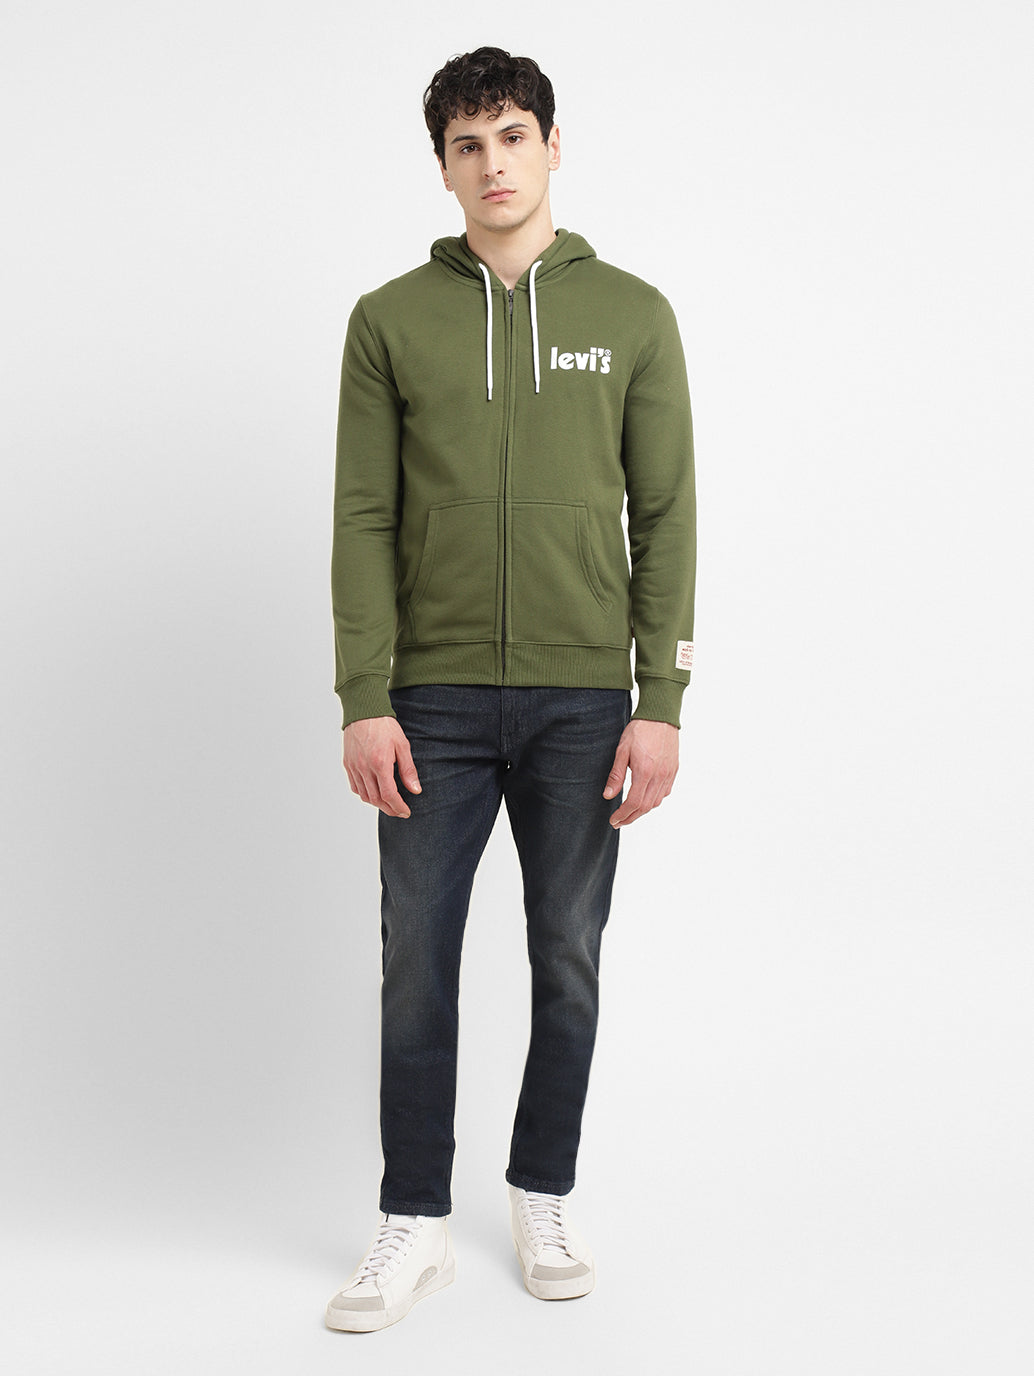 Men's Solid Green Hooded Sweatshirt